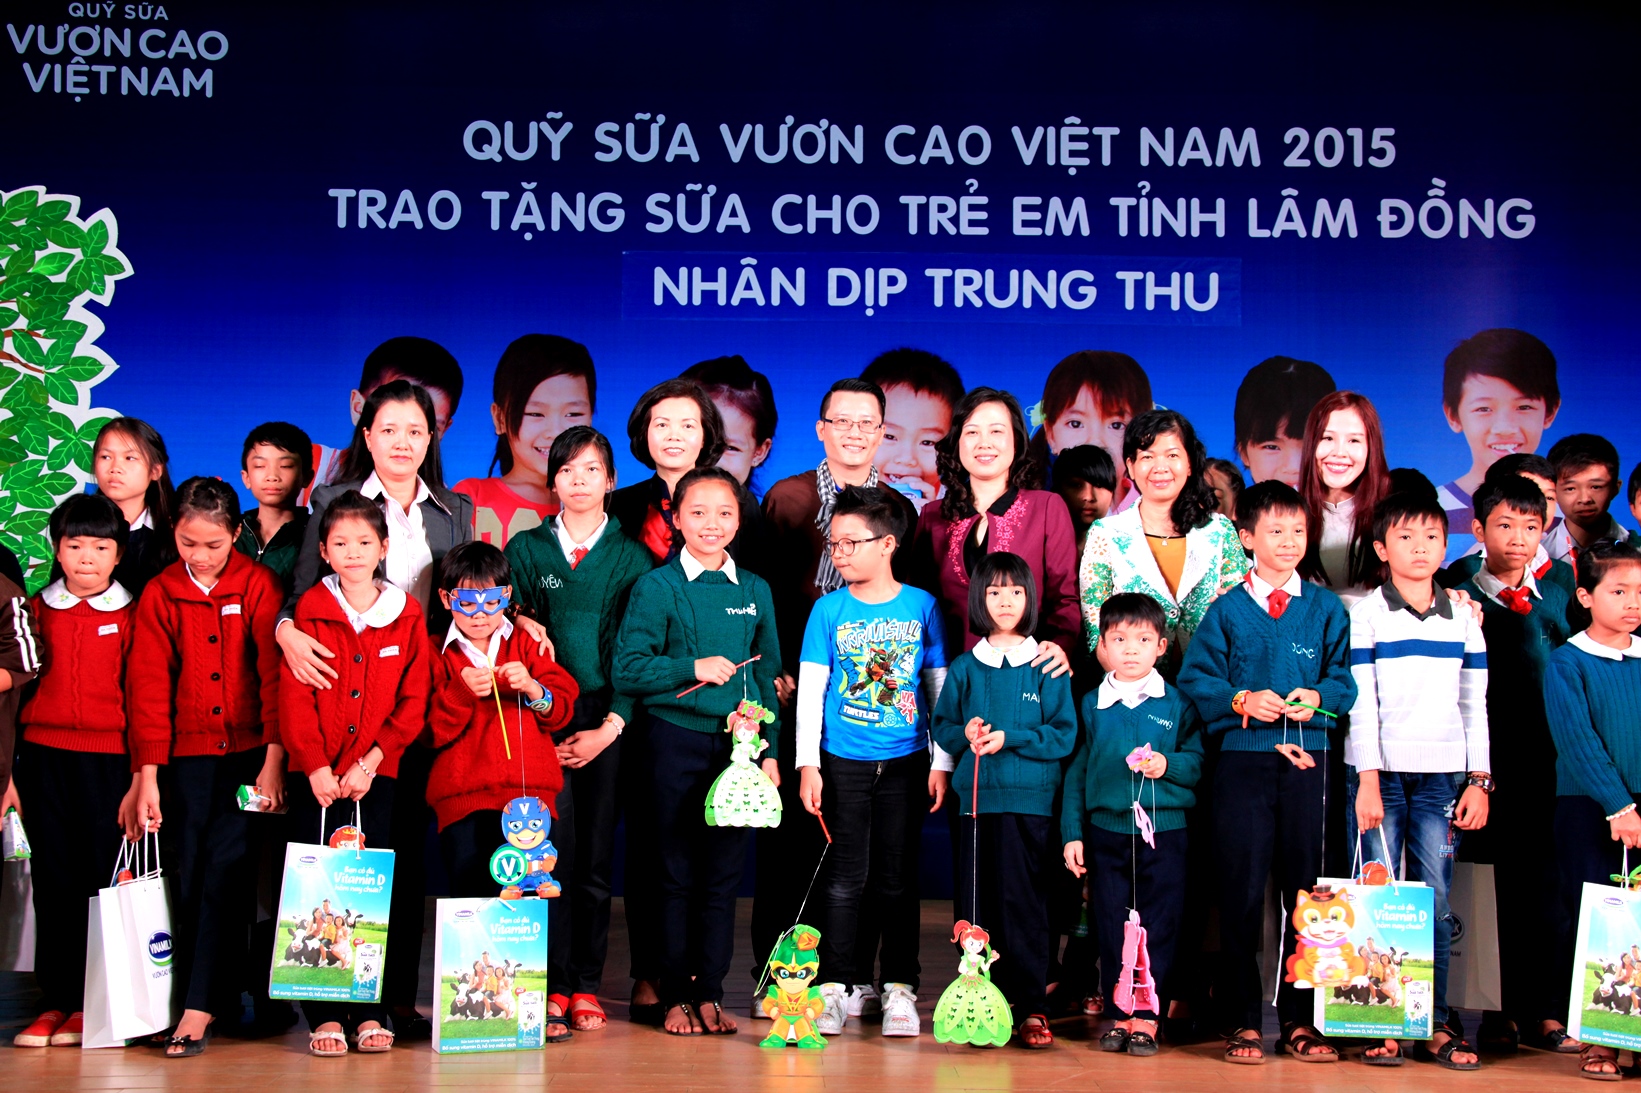 Ban Điều hành Quỹ sữa Vươn cao Việt Nam, đại diện Vinamilk và các Đại sứ chương trình cùng chụp ảnh lưu niệm với trẻ em tỉnh Lâm Đồng